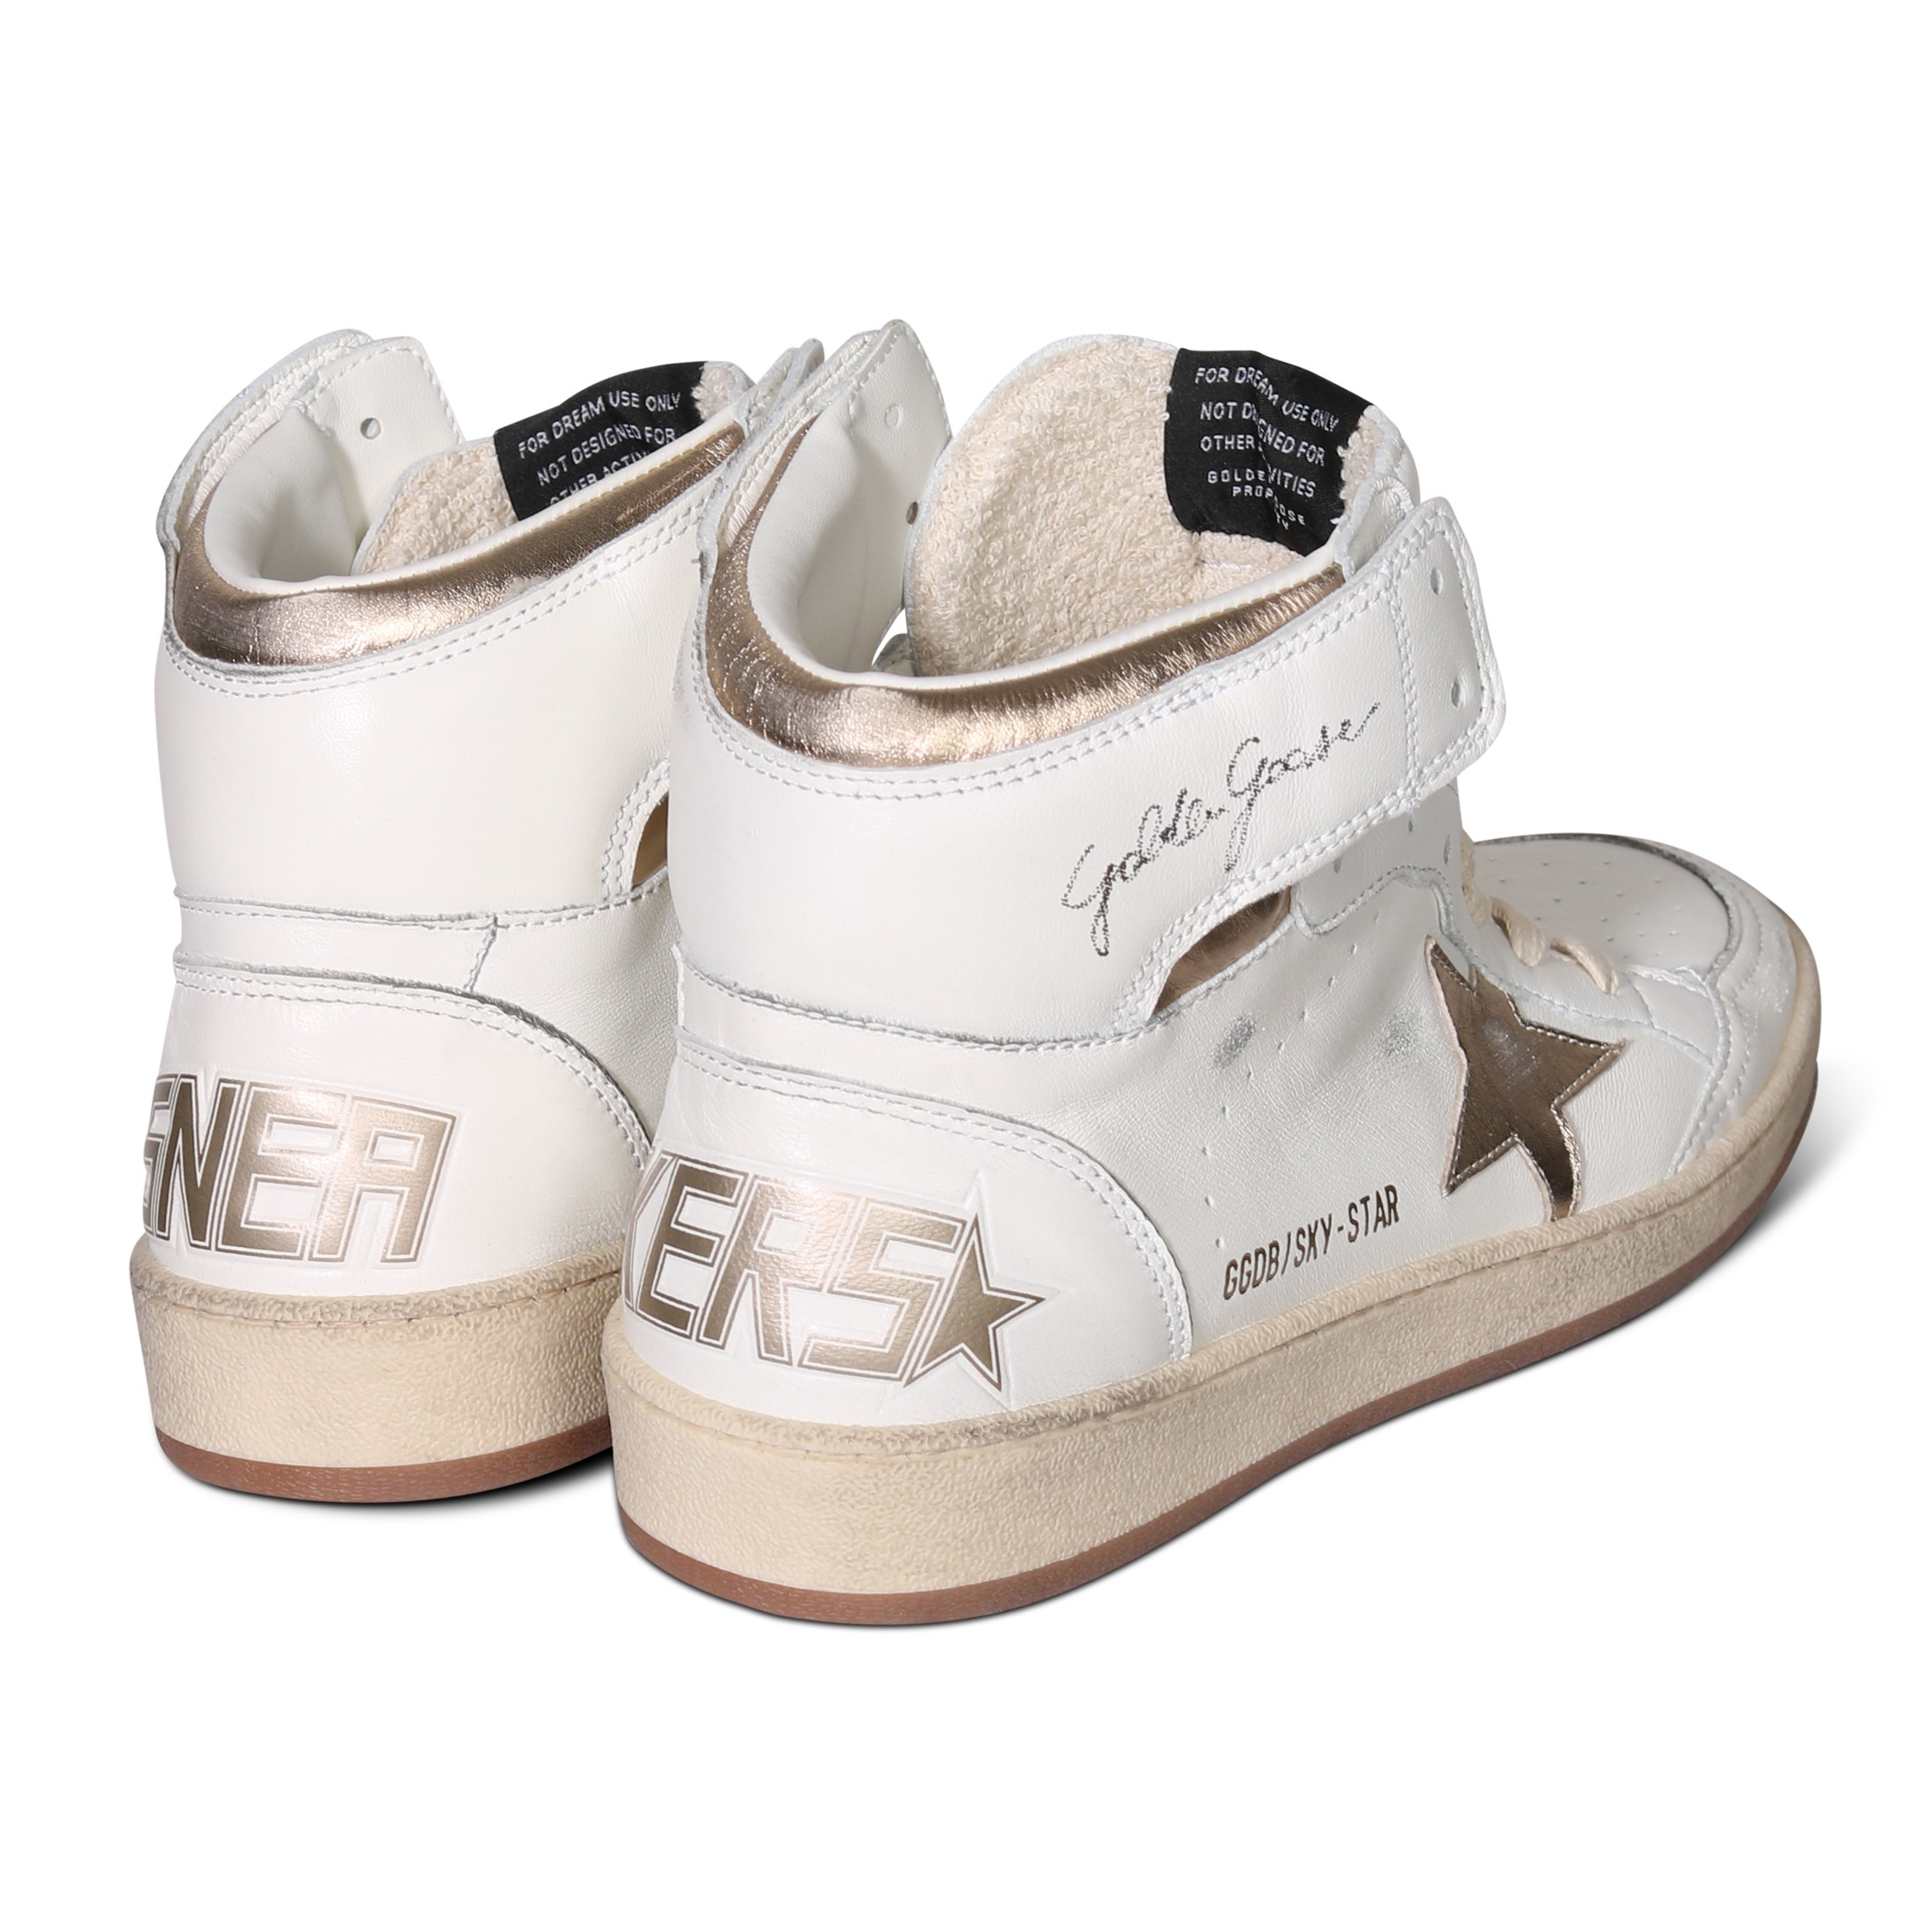 GOLDEN GOOSE Sneaker Sky Star in White/Gold Nappa 40